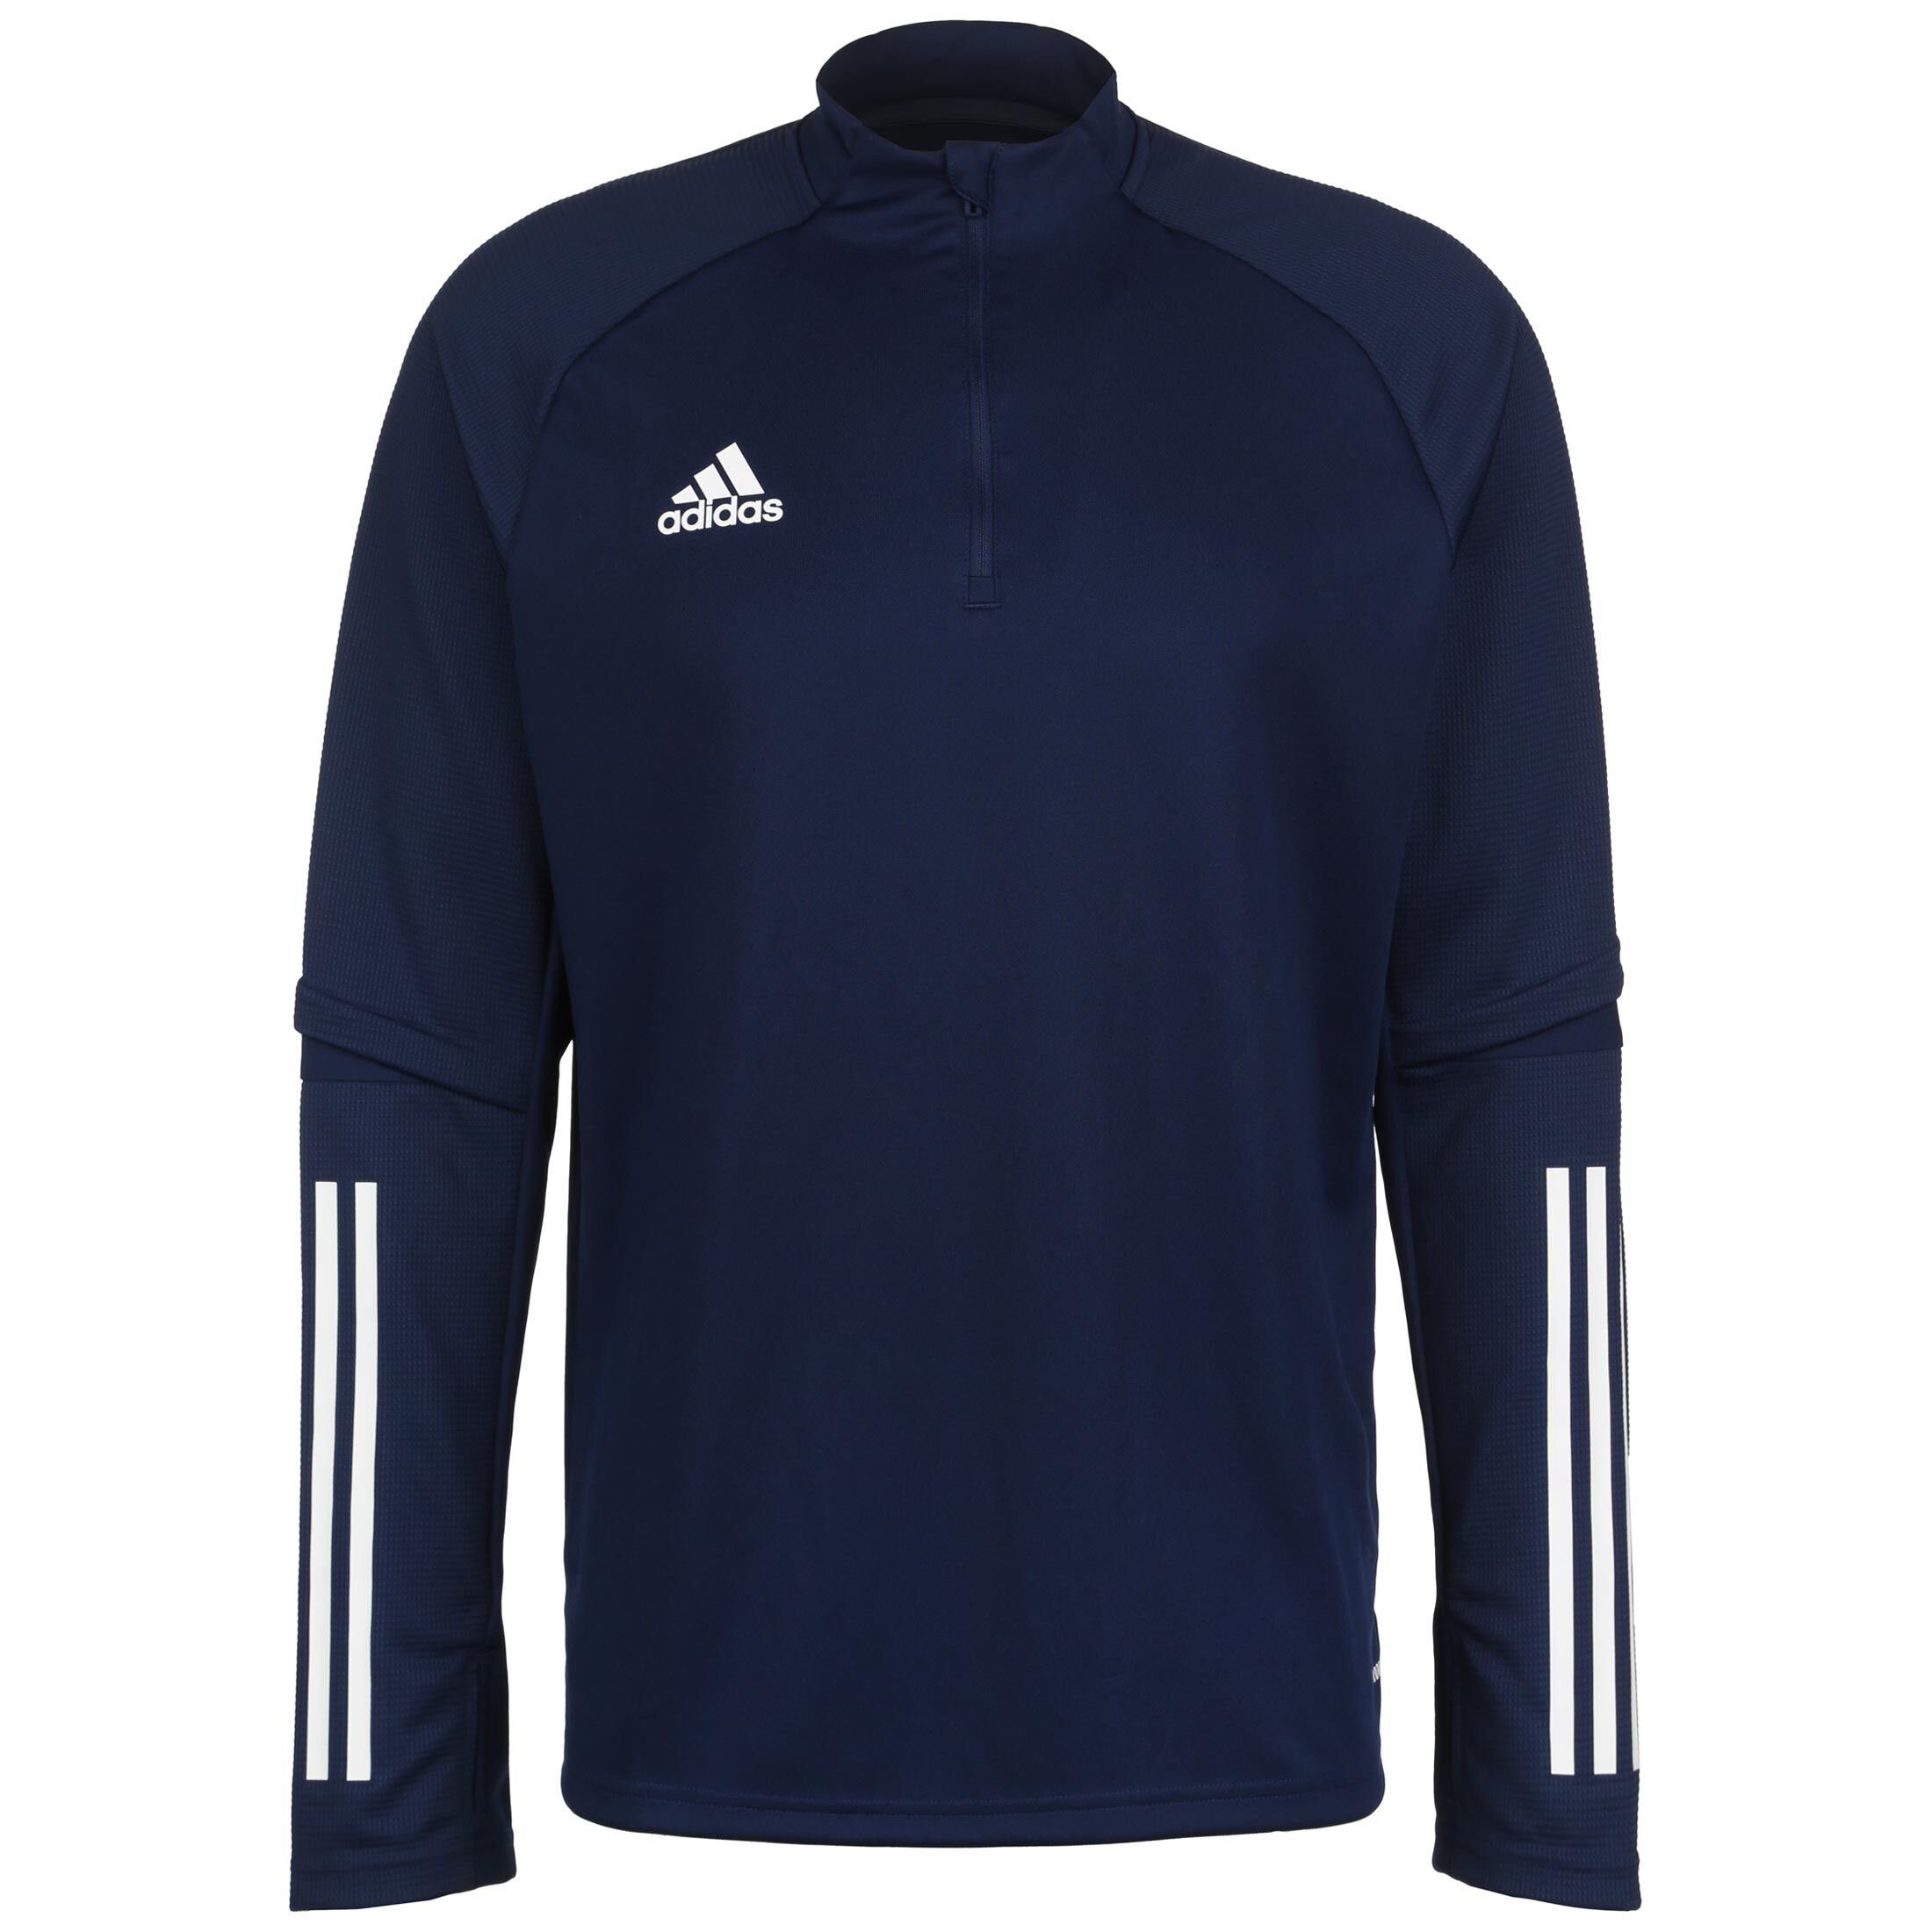 adidas Performance Sweatshirt Condivo 20 Trainingssweat Herren dunkelblau / weiß